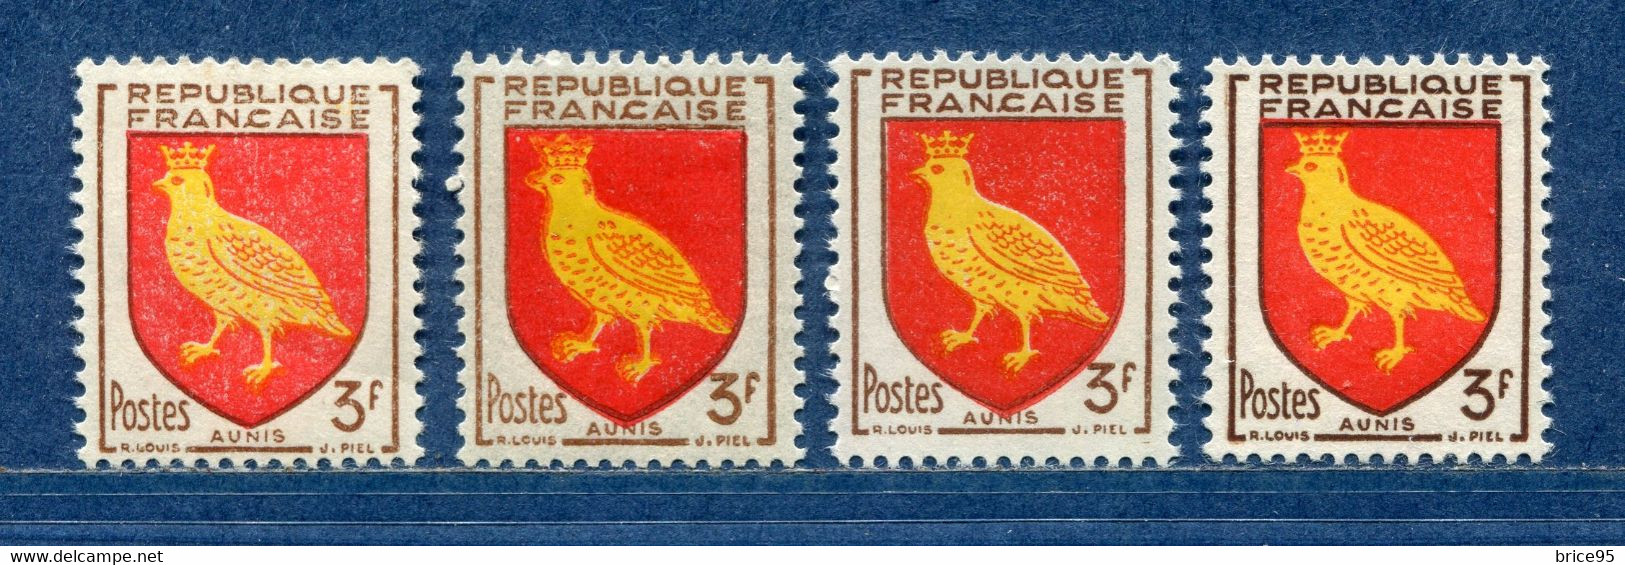 ⭐ France - Variété - YT N° 1004 - Couleurs - Pétouilles - Neuf Sans Charnière - 1954 ⭐ - Nuevos